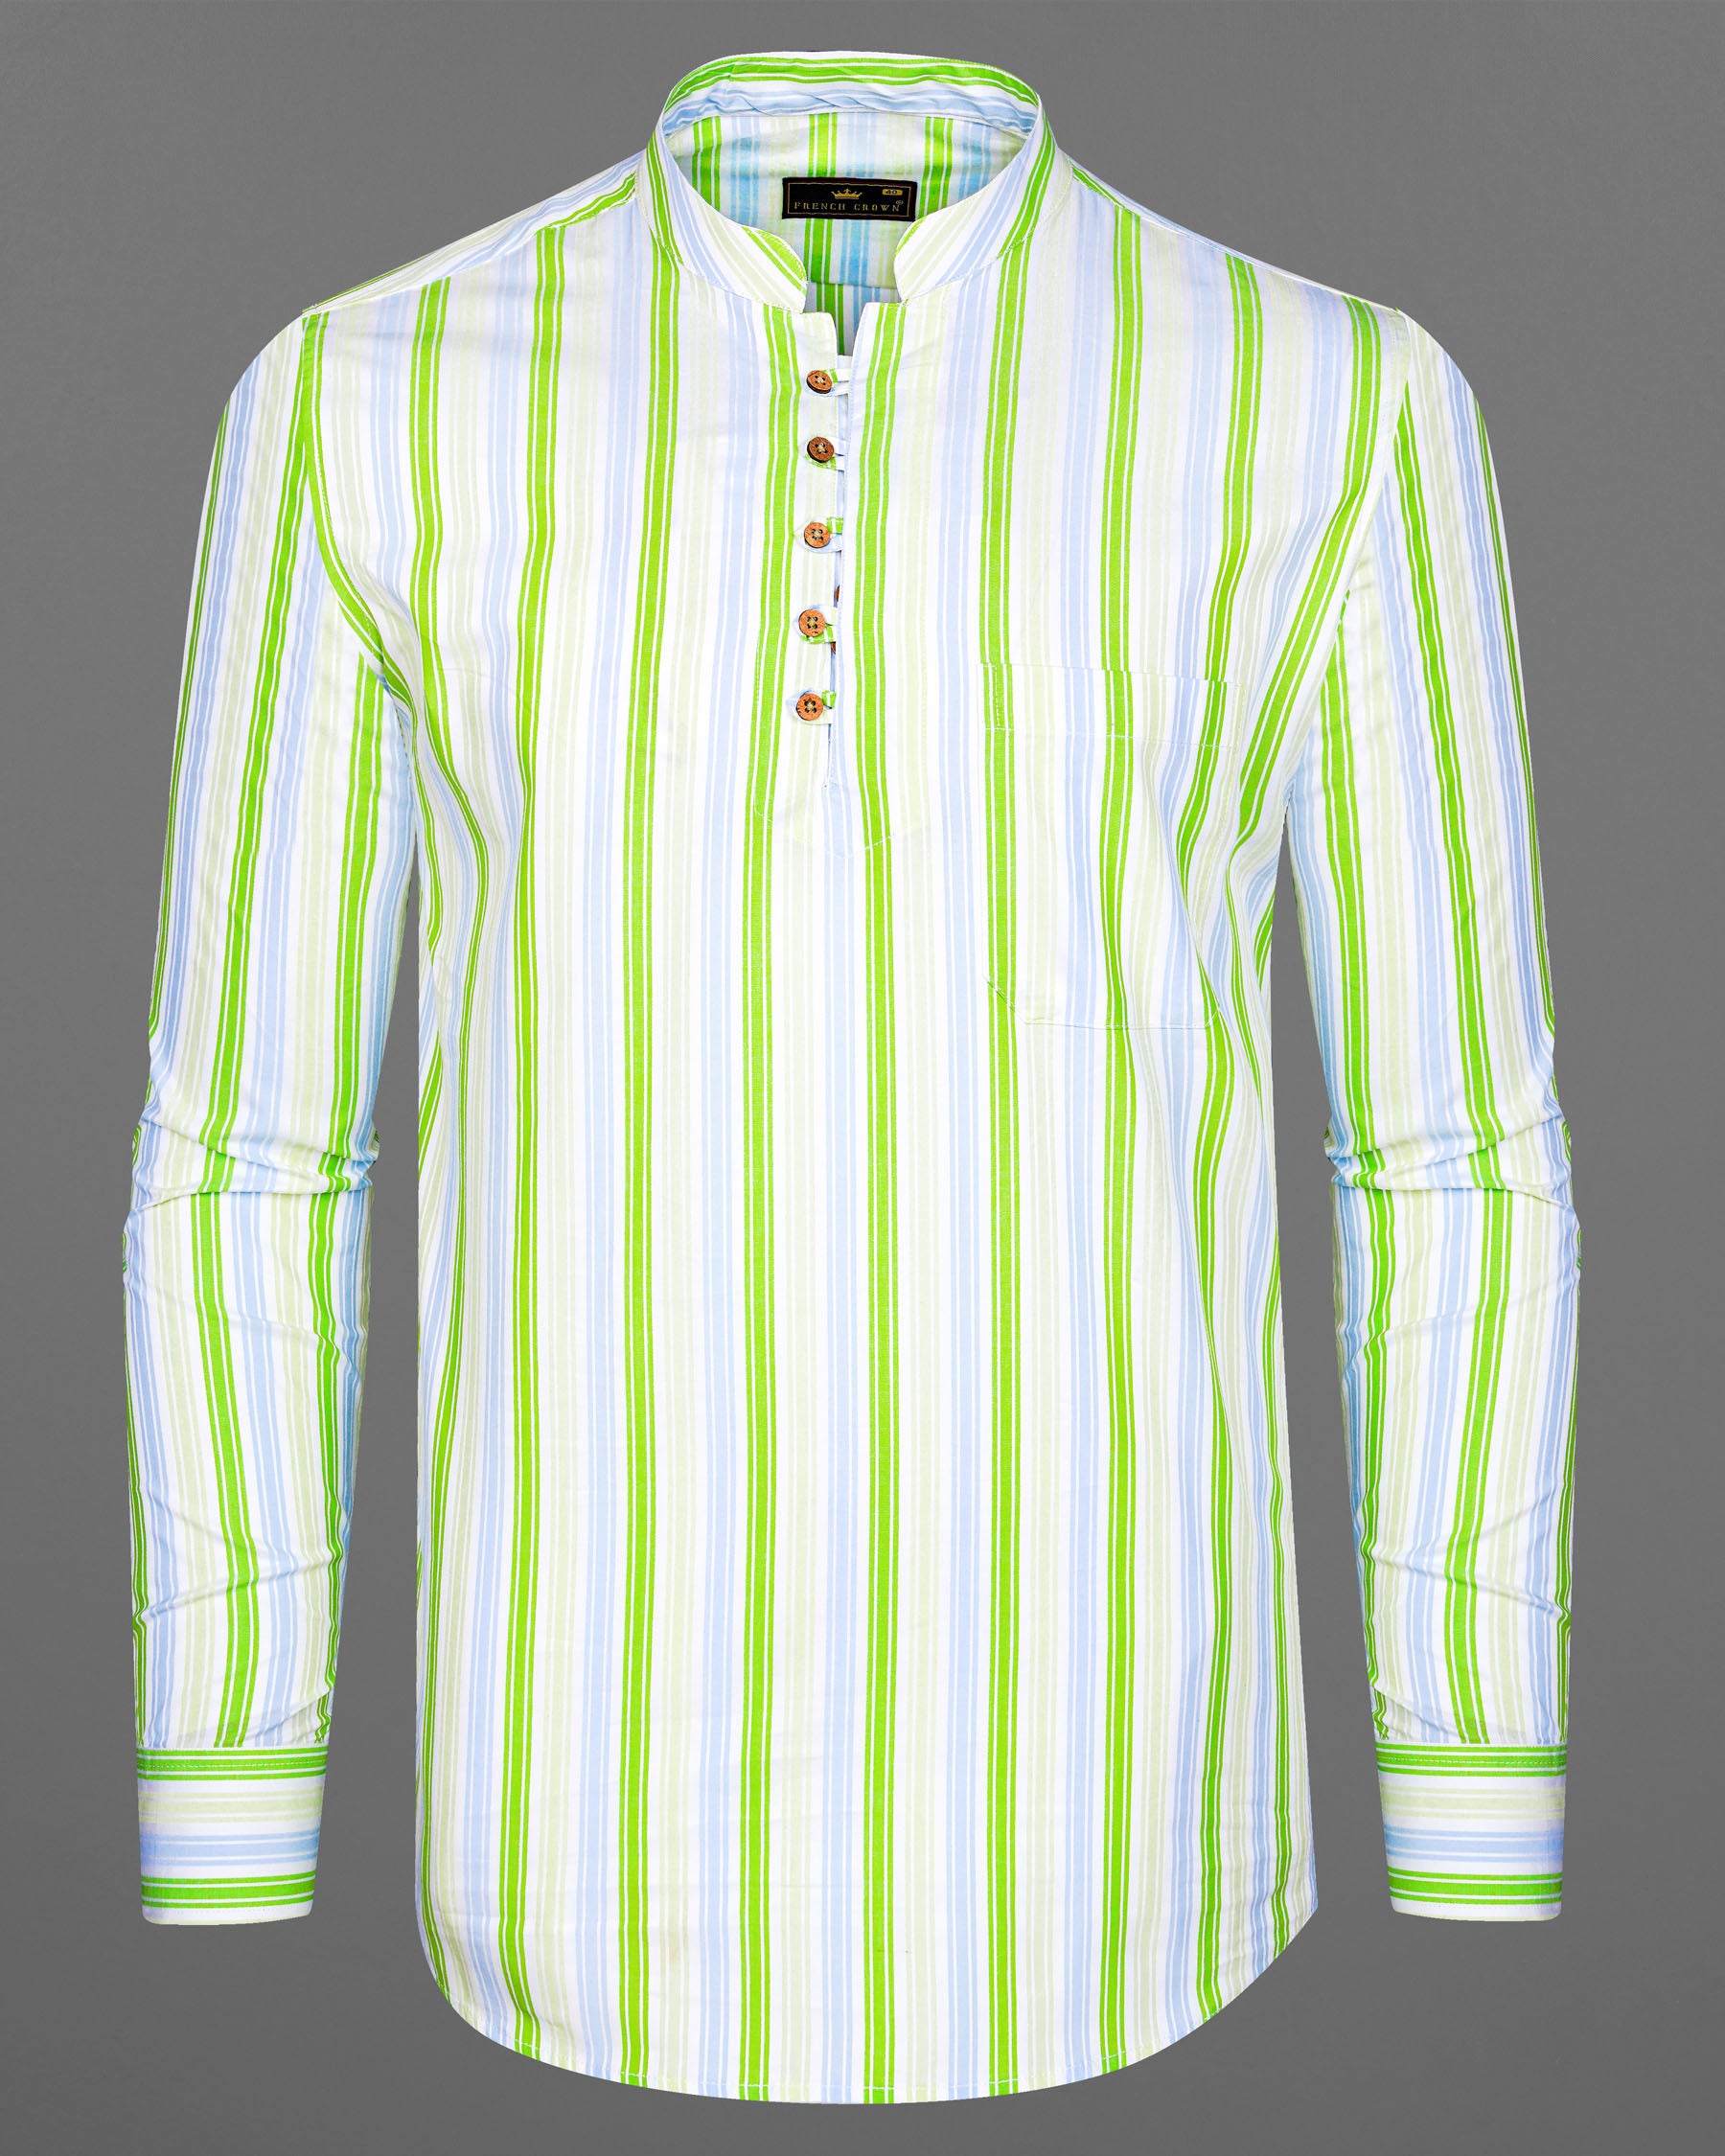 Conifer Green and Bright White Striped Dobby Textured Premium Giza Cotton Kurta Shirt 7853-KS-38, 7853-KS-H-38, 7853-KS-39,7853-KS-H-39, 7853-KS-40, 7853-KS-H-40, 7853-KS-42, 7853-KS-H-42, 7853-KS-44, 7853-KS-H-44, 7853-KS-46, 7853-KS-H-46, 7853-KS-48, 7853-KS-H-48, 7853-KS-50, 7853-KS-H-50, 7853-KS-52, 7853-KS-H-52